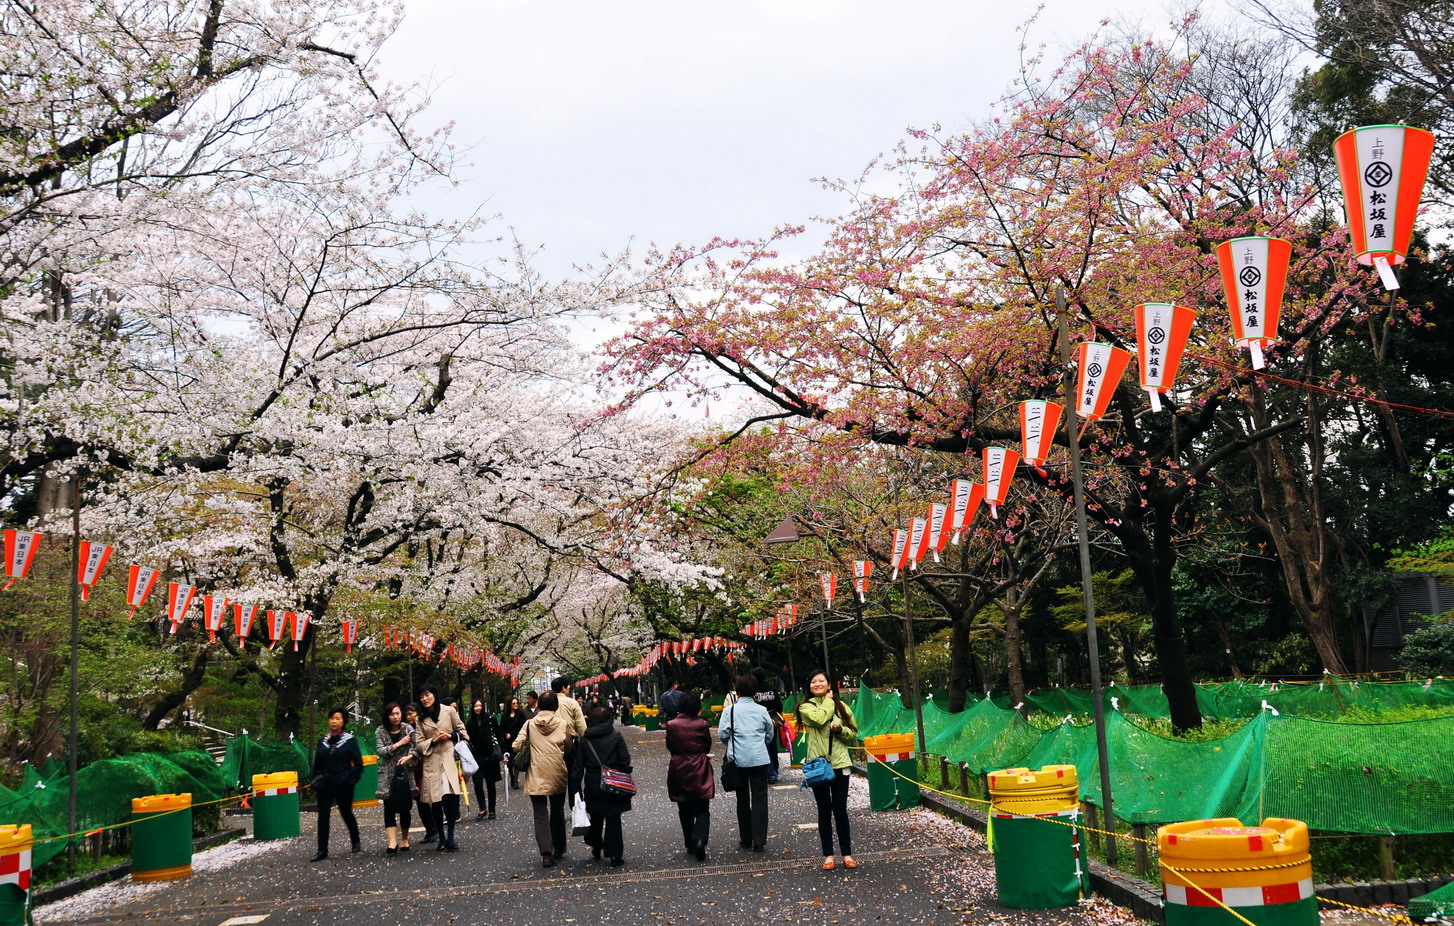 【携程攻略】东京上野公园景点,每年的上野樱花祭都能迎来数百万的游客，只为一睹随风飘落的漫天花雪…